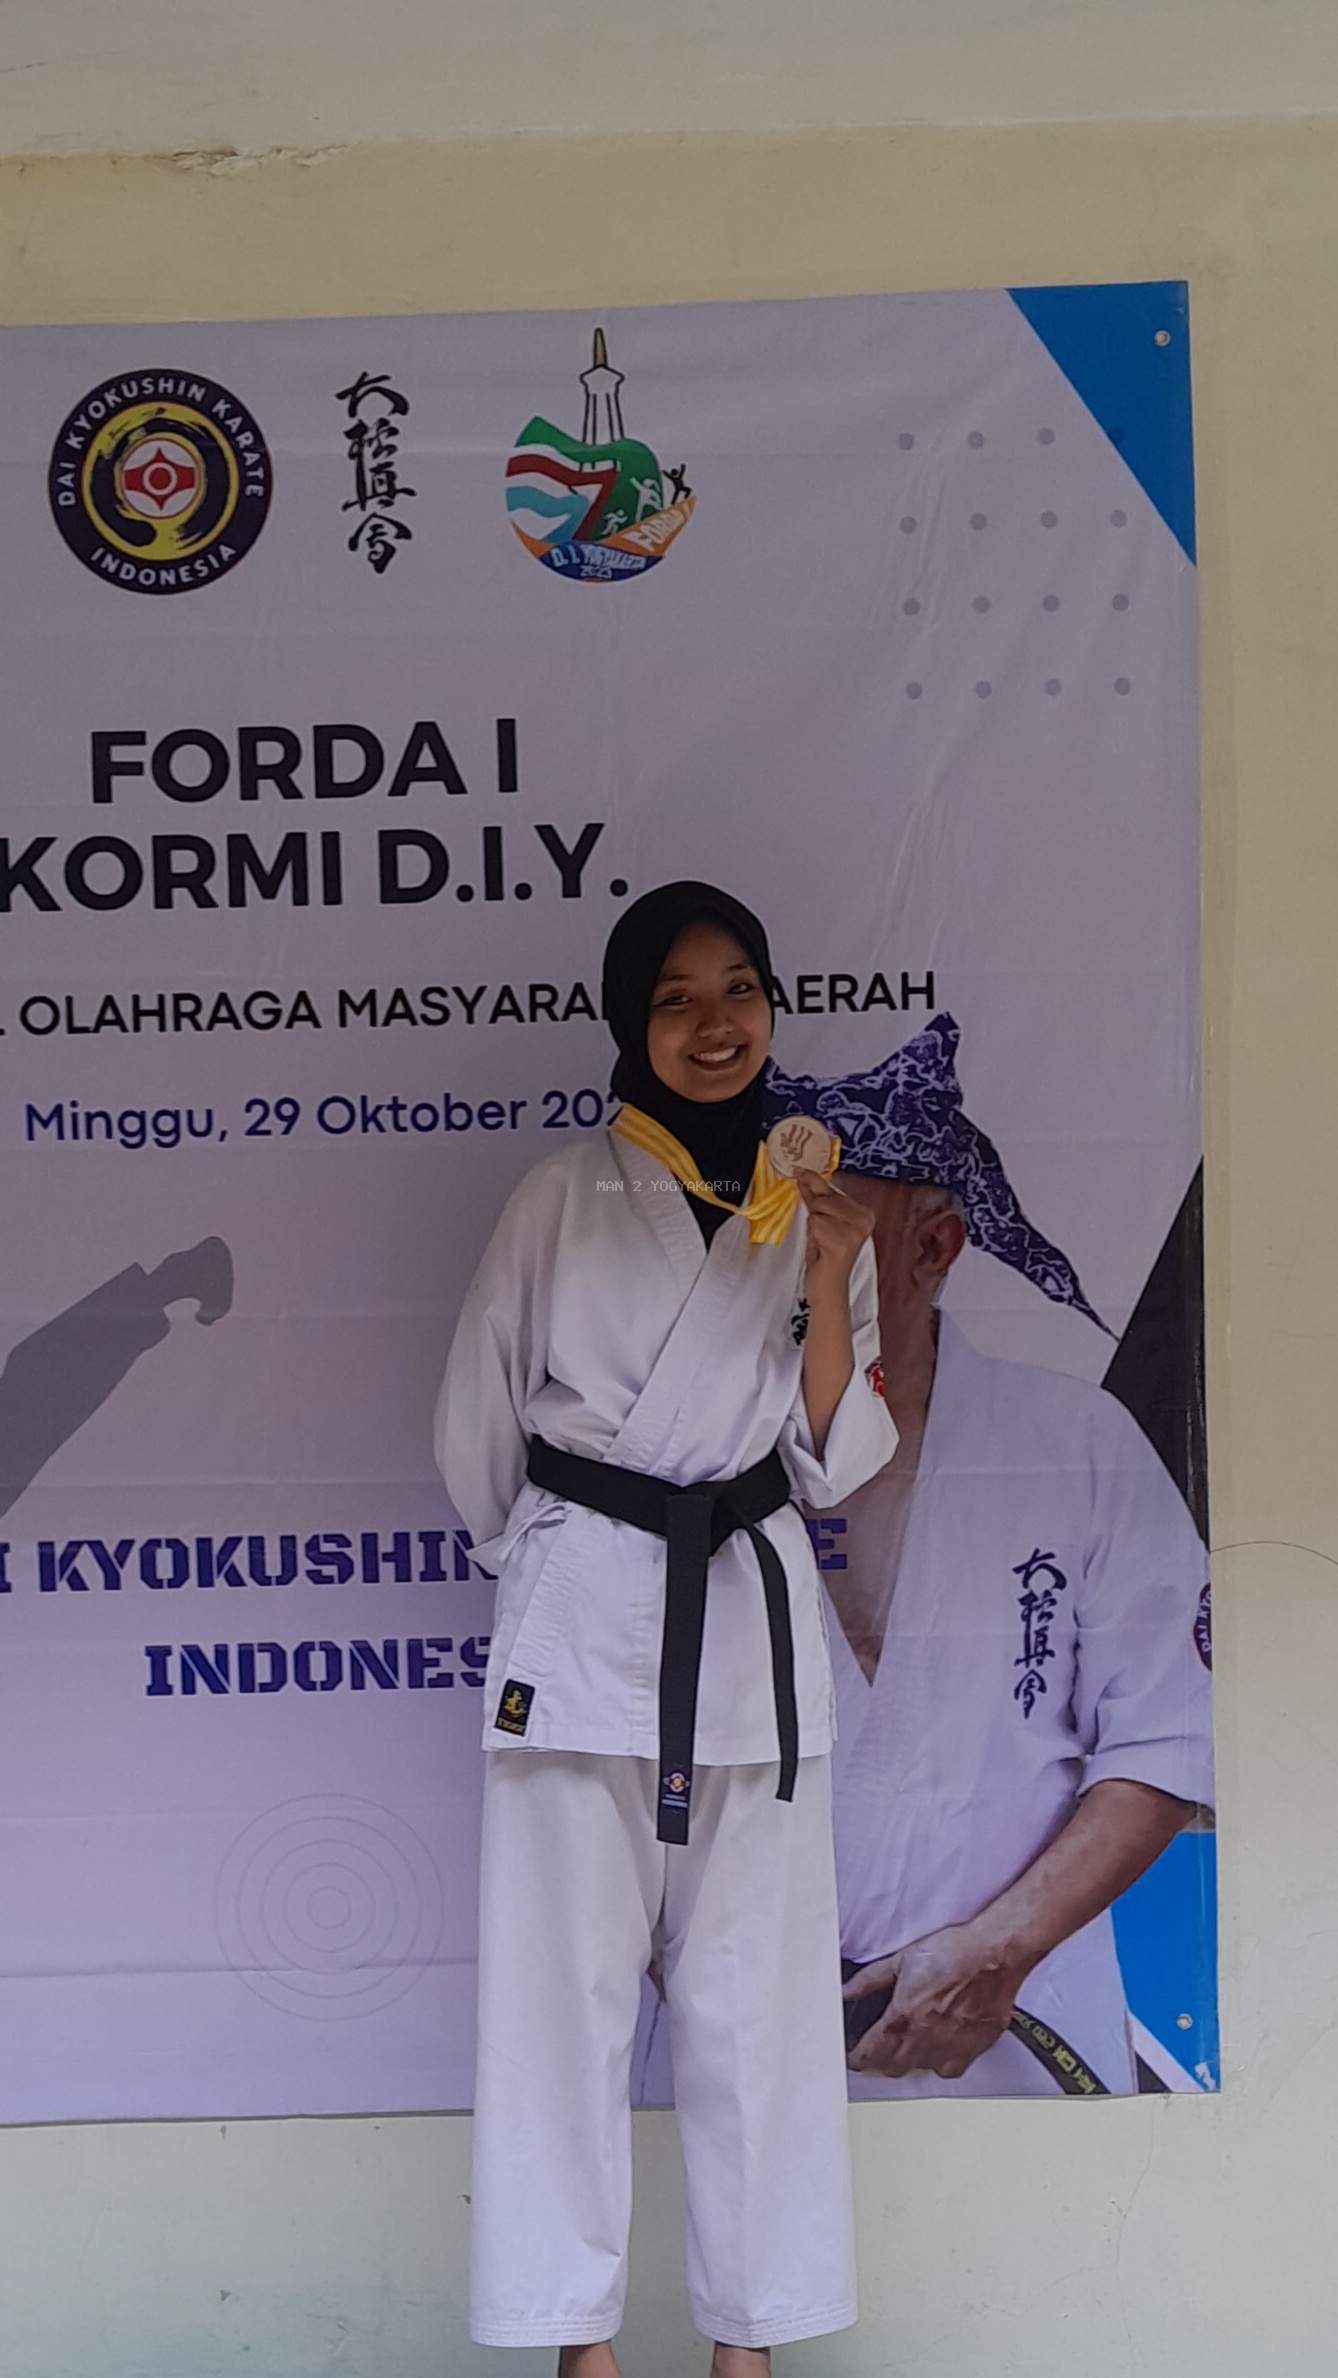 Nabila Nur Azizah Siswa MAN 2 Yogyakarta, Juara 2 Forda I, Kormi DIY